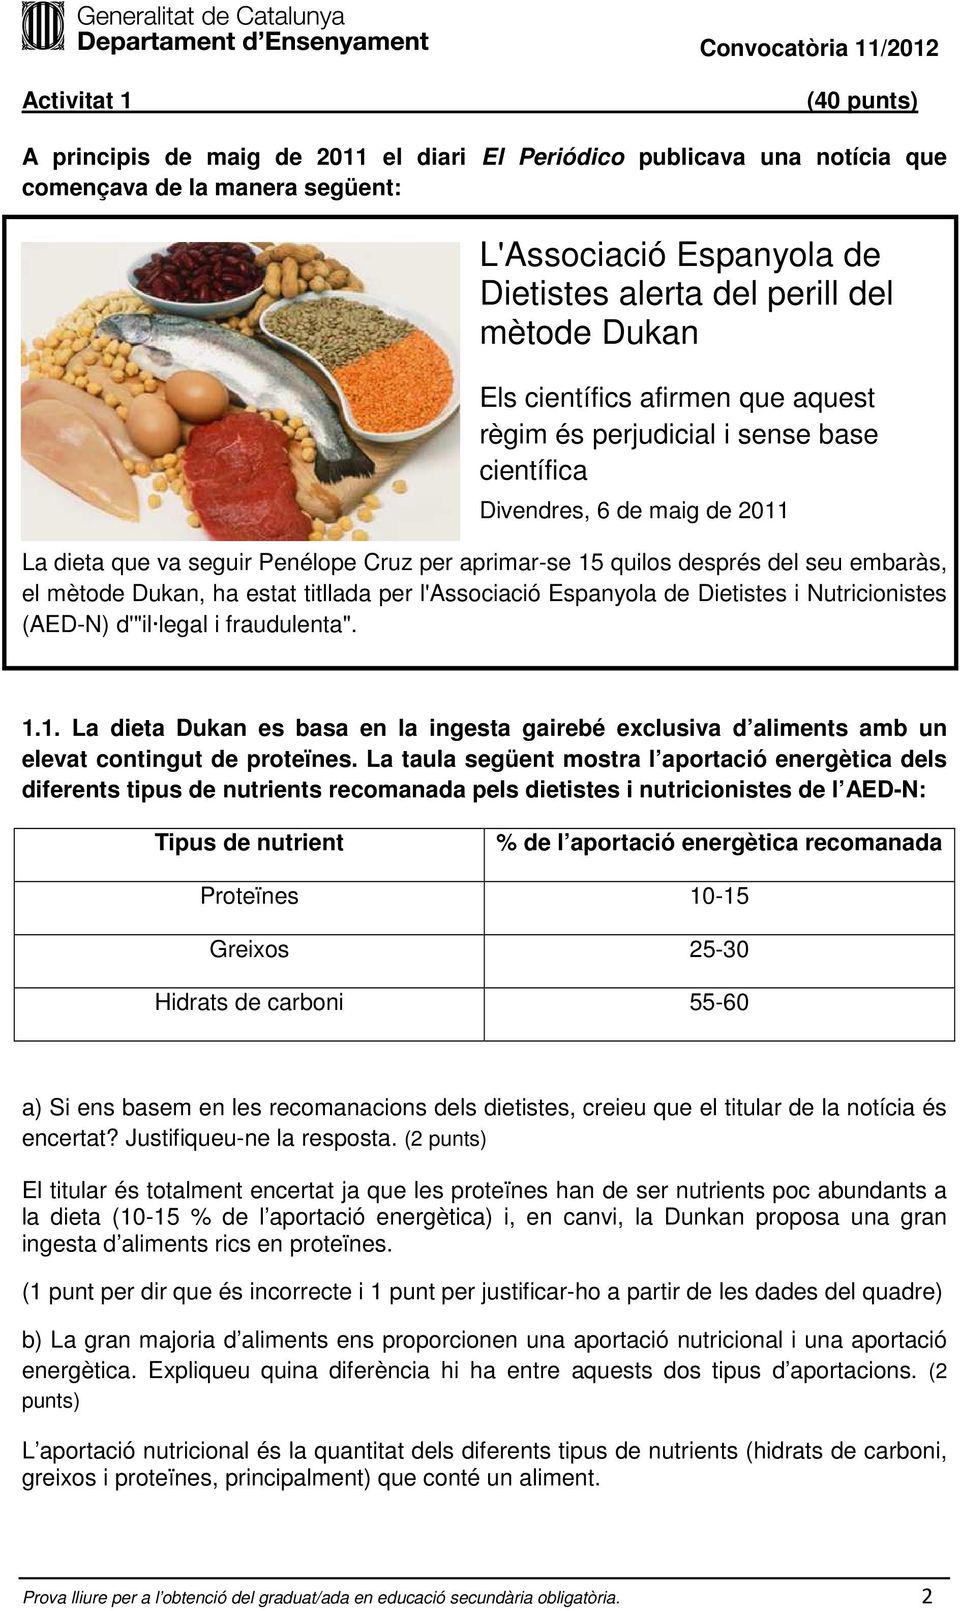 el mètode Dukan, ha estat titllada per l'associació Espanyola de Dietistes i Nutricionistes (AED-N) d'"il legal i fraudulenta". 1.